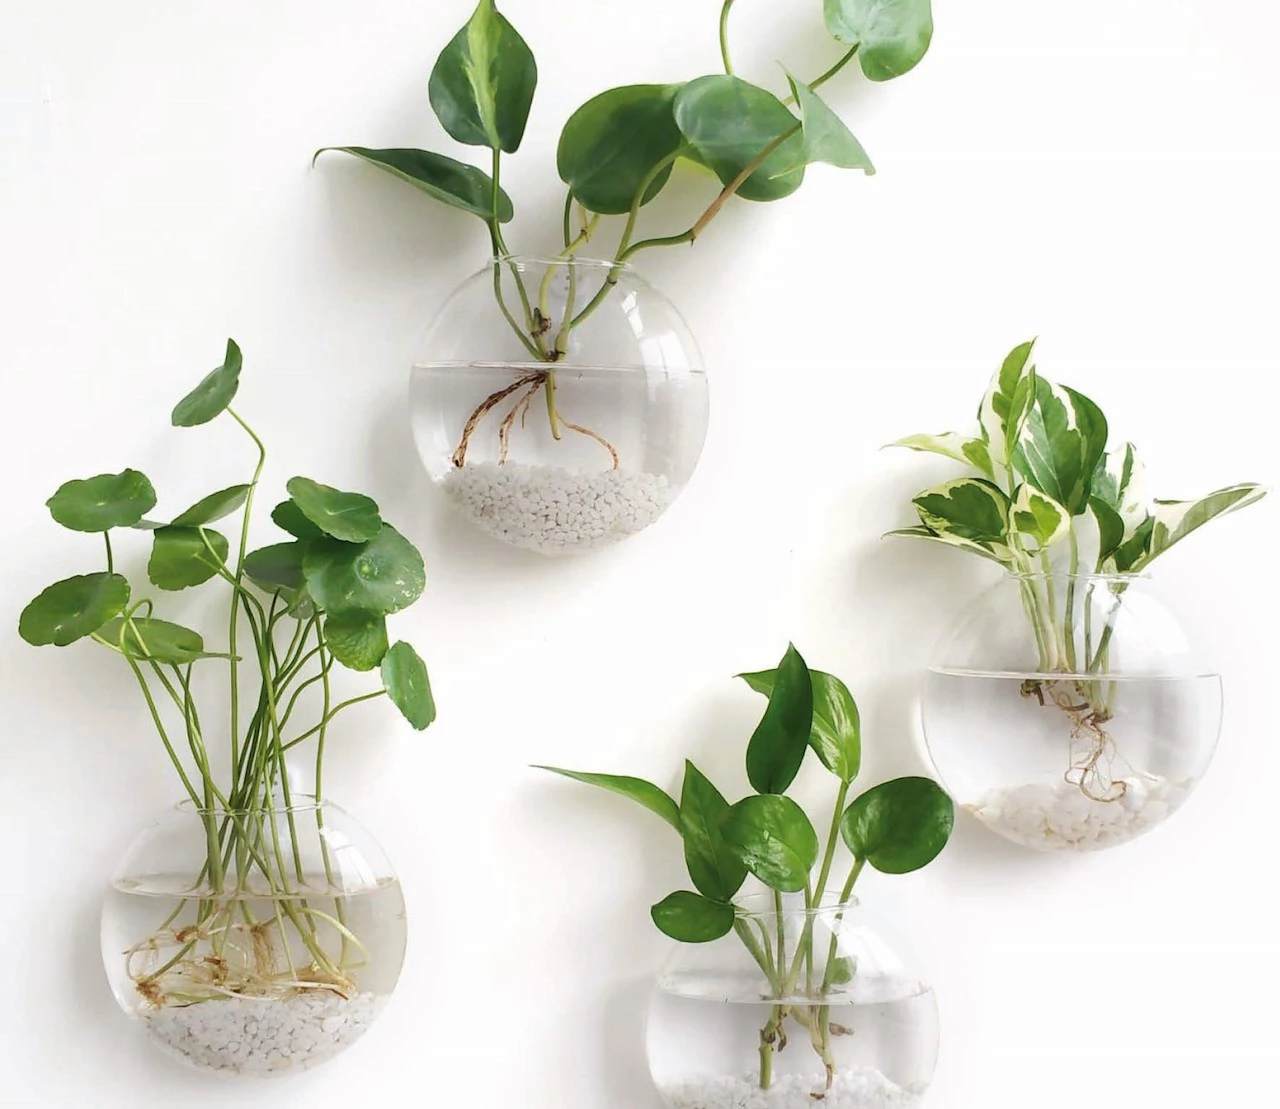 kamerplanten-op-water-houden-makkelijker-dan-je-denkt